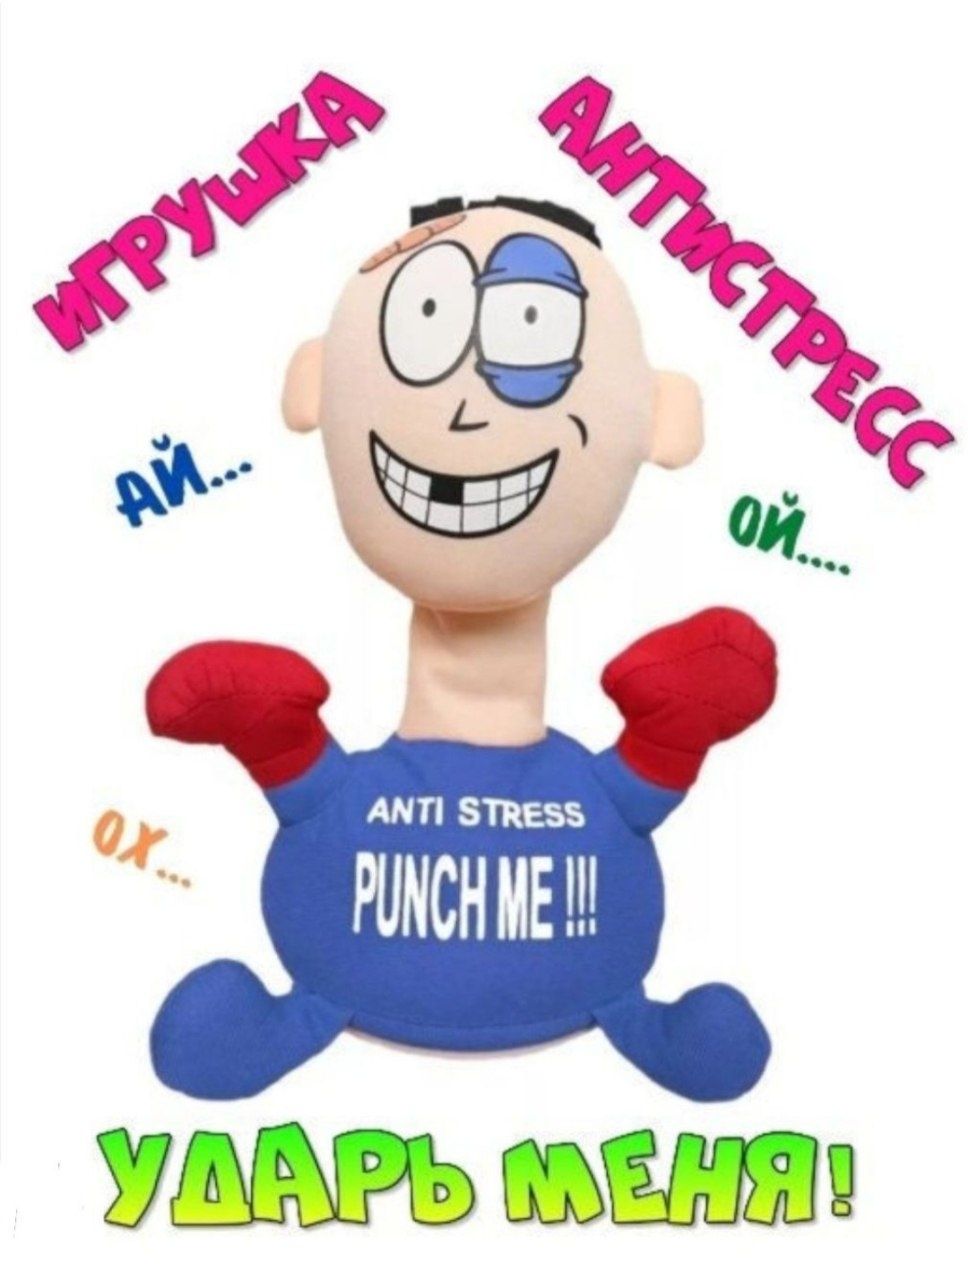 Игрушка-антистресс / Мягкая игрушка антистресс "Ударь меня" / Punch Me